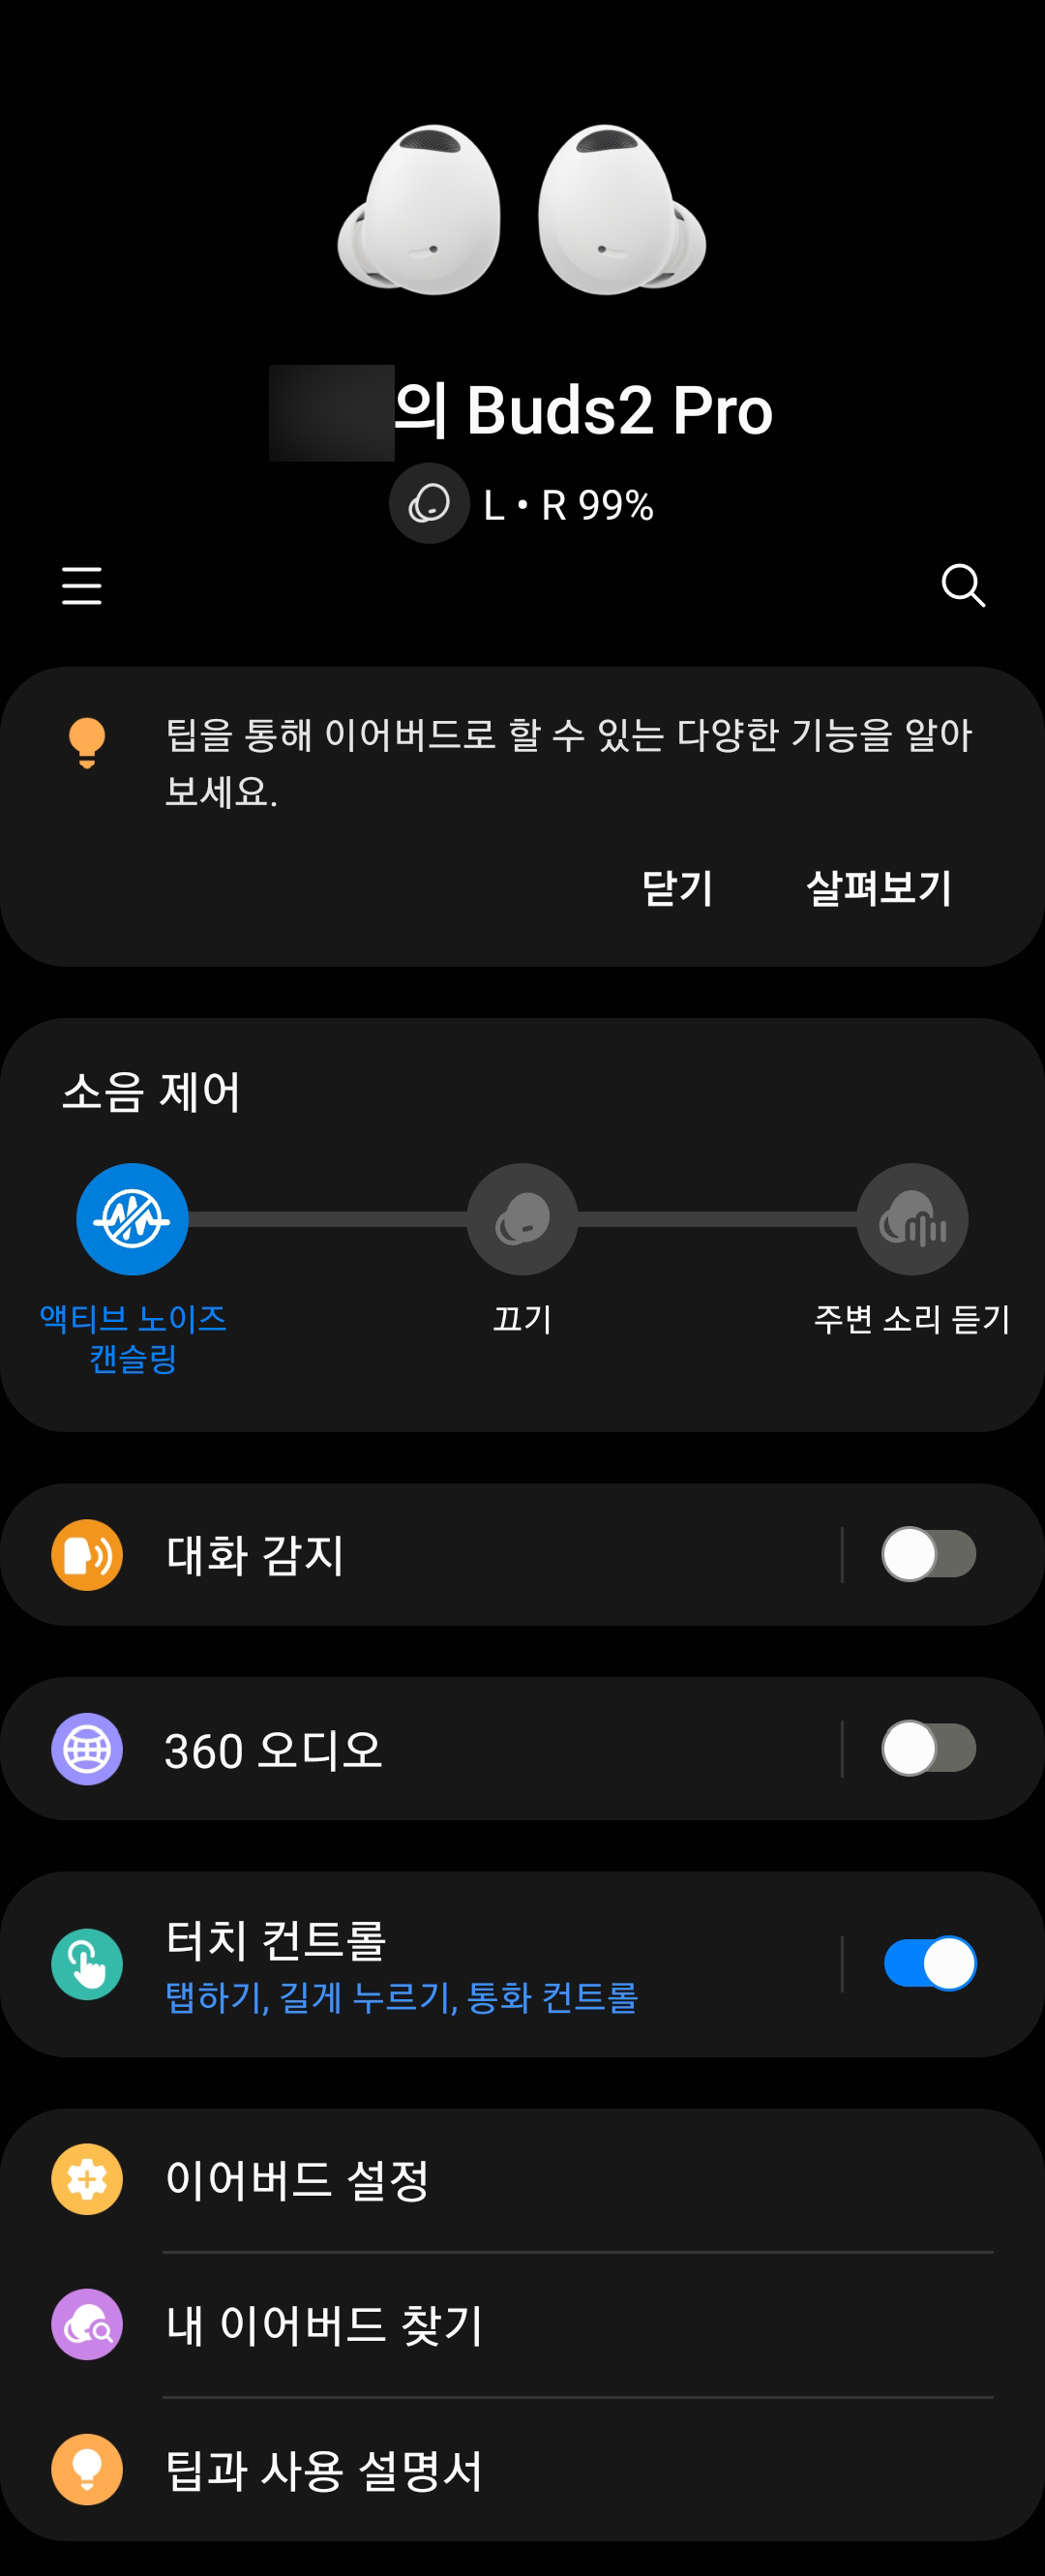 갤럭시 웨어러블 앱(Galaxy Wearable App)에 연결된 버즈2 프로 (Buds 2 Pro)